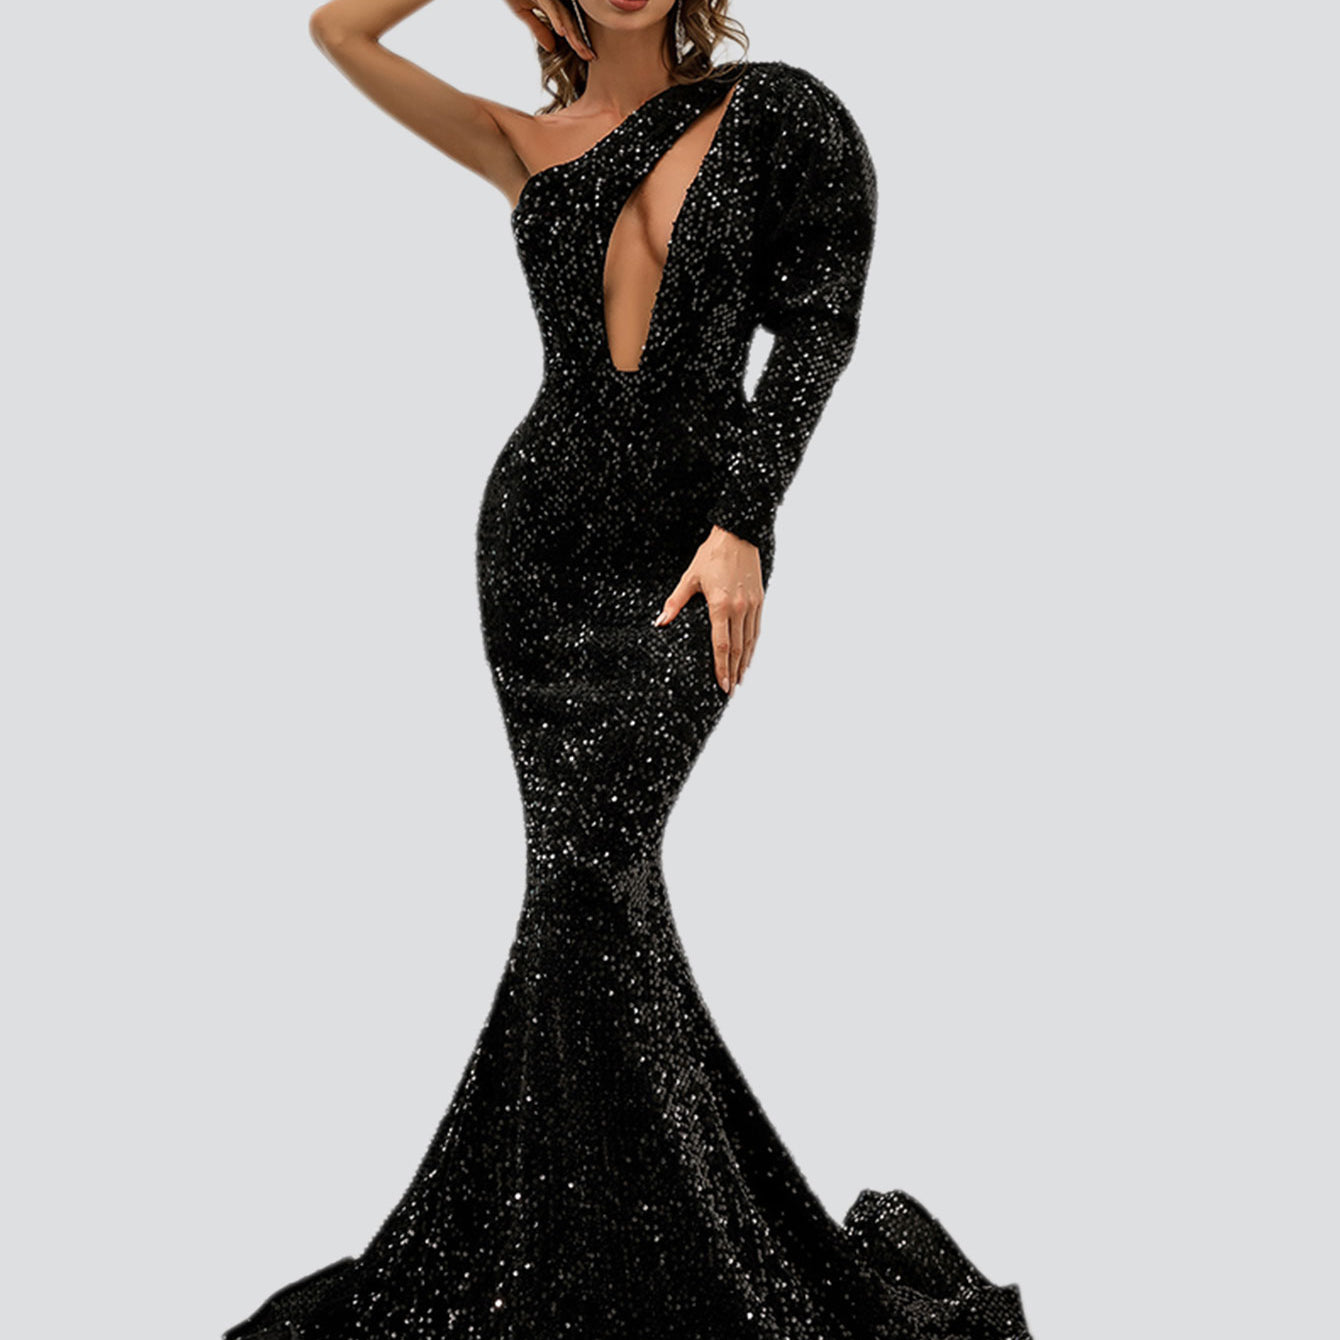 Schwarzes Meerjungfrauenkleid mit Ausschnitt M0803